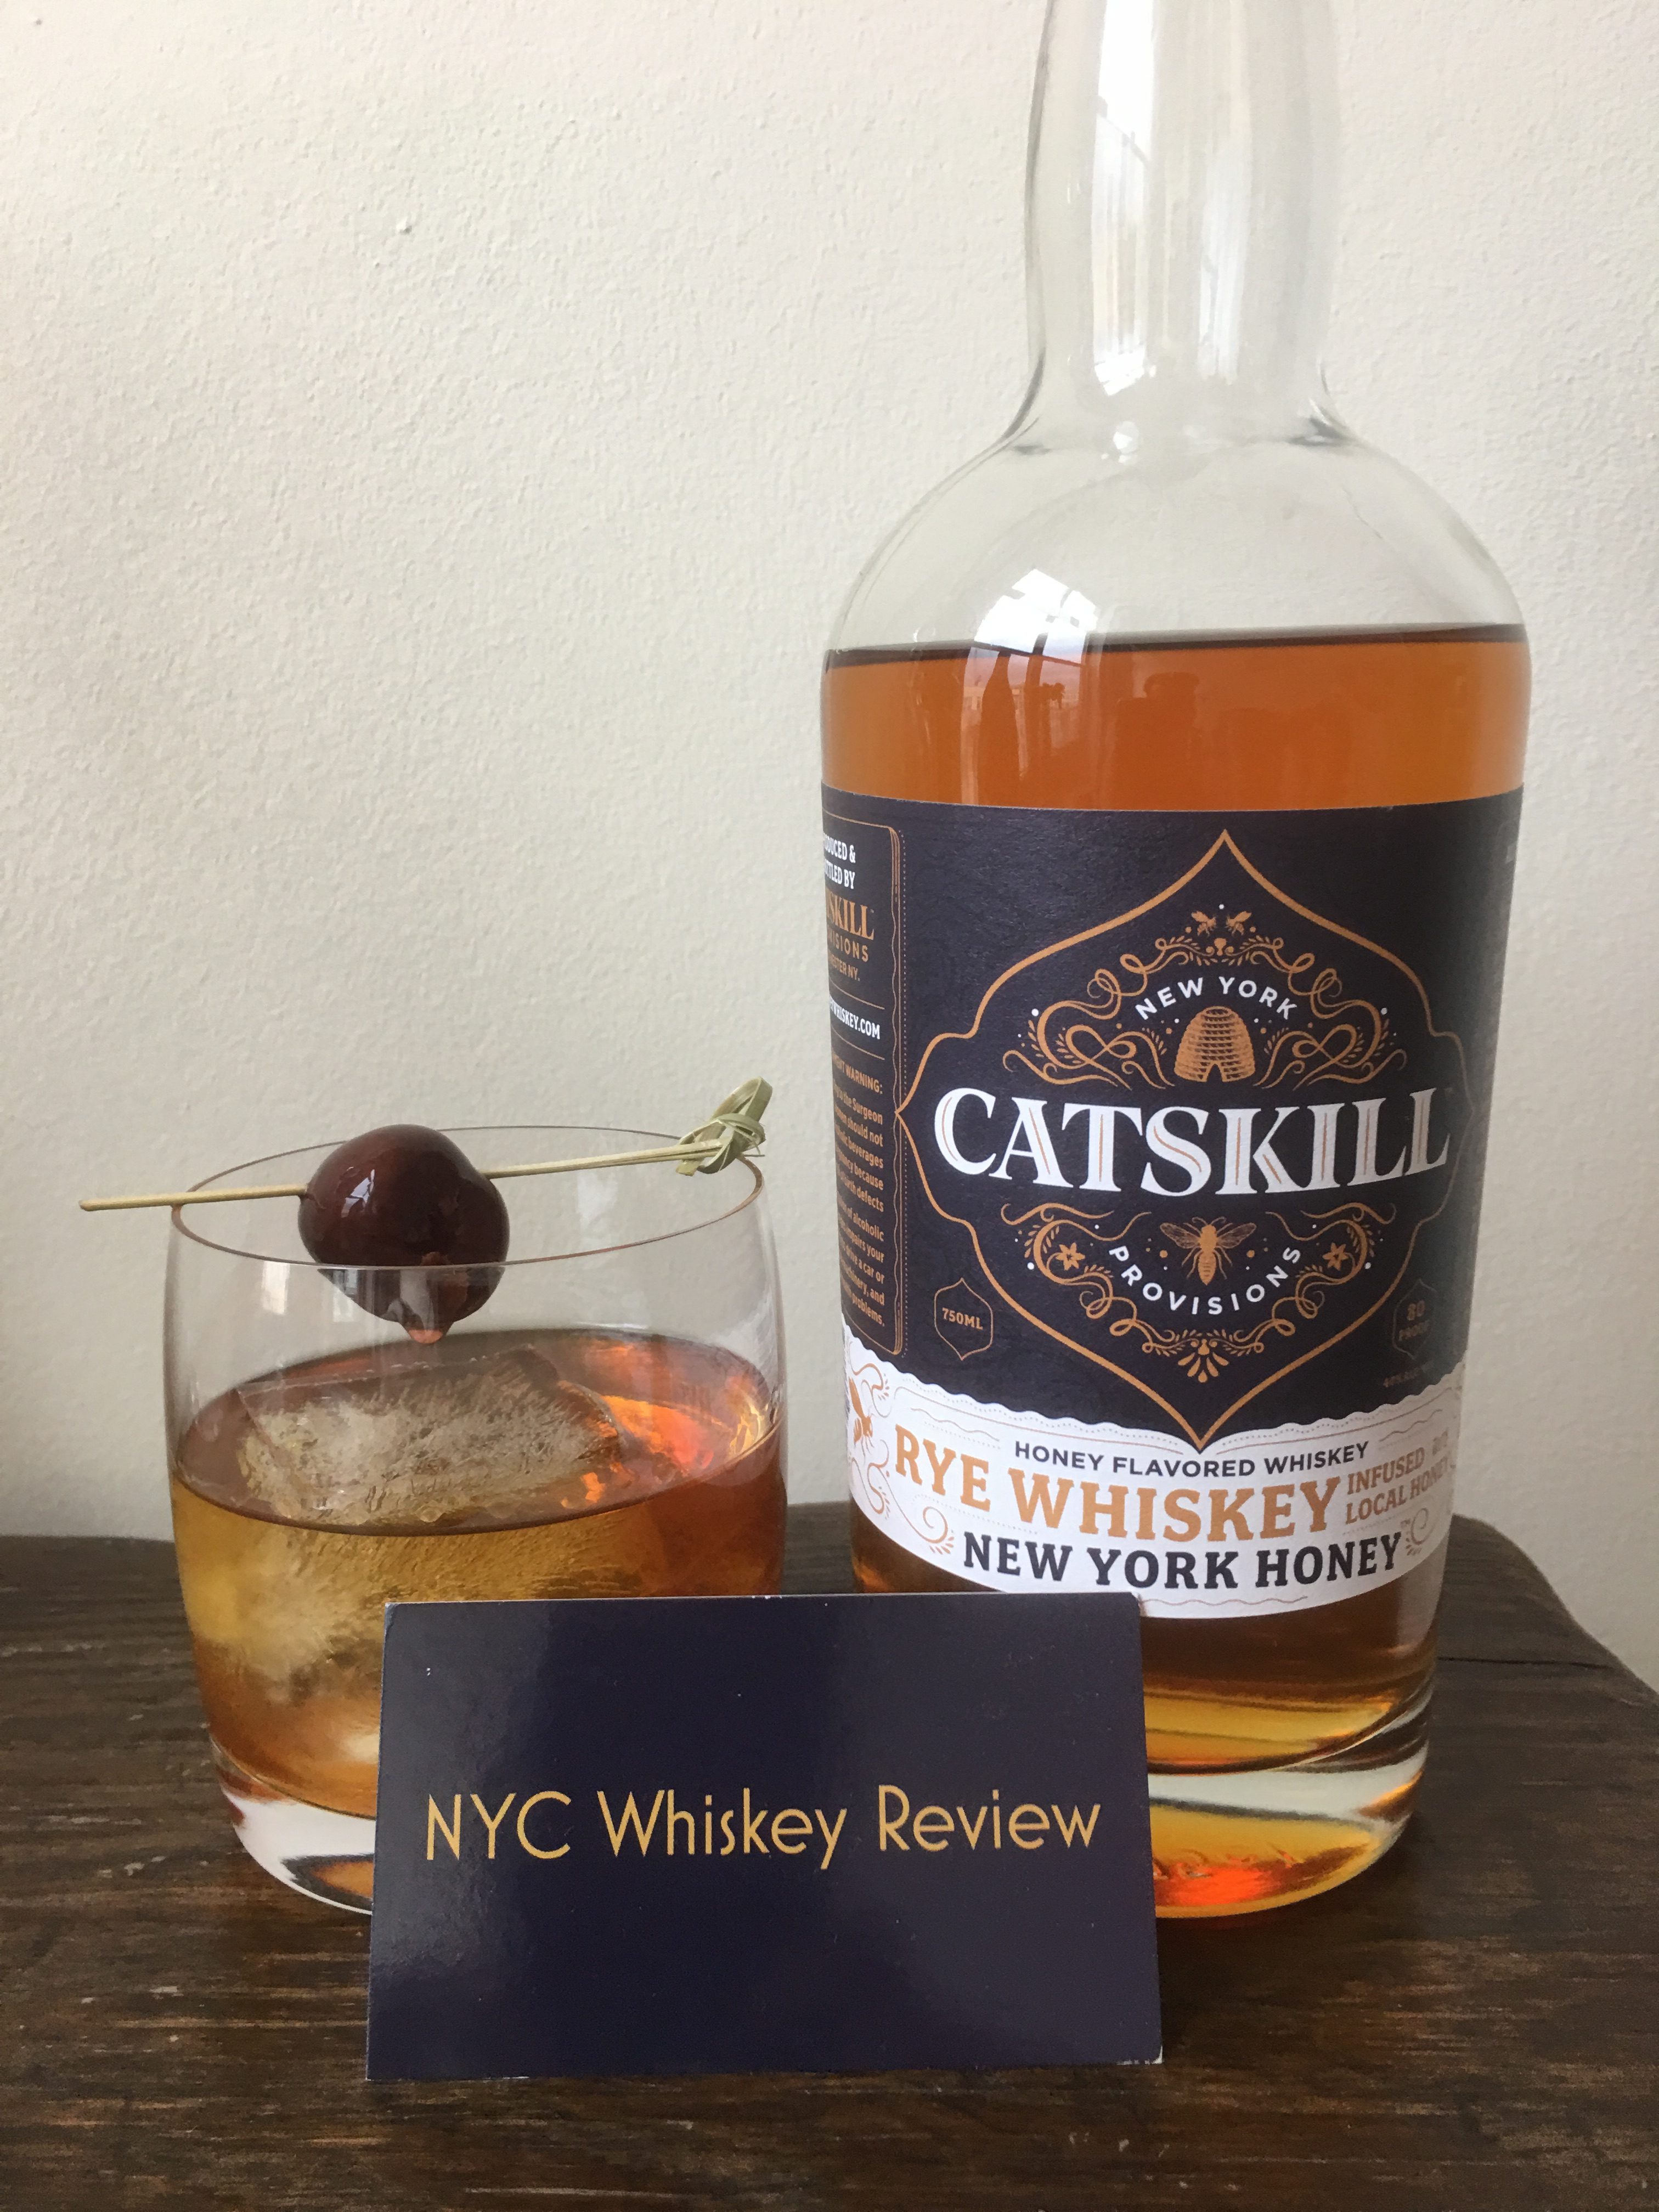 Catskill Provisions “Honey” Rye Whiskey